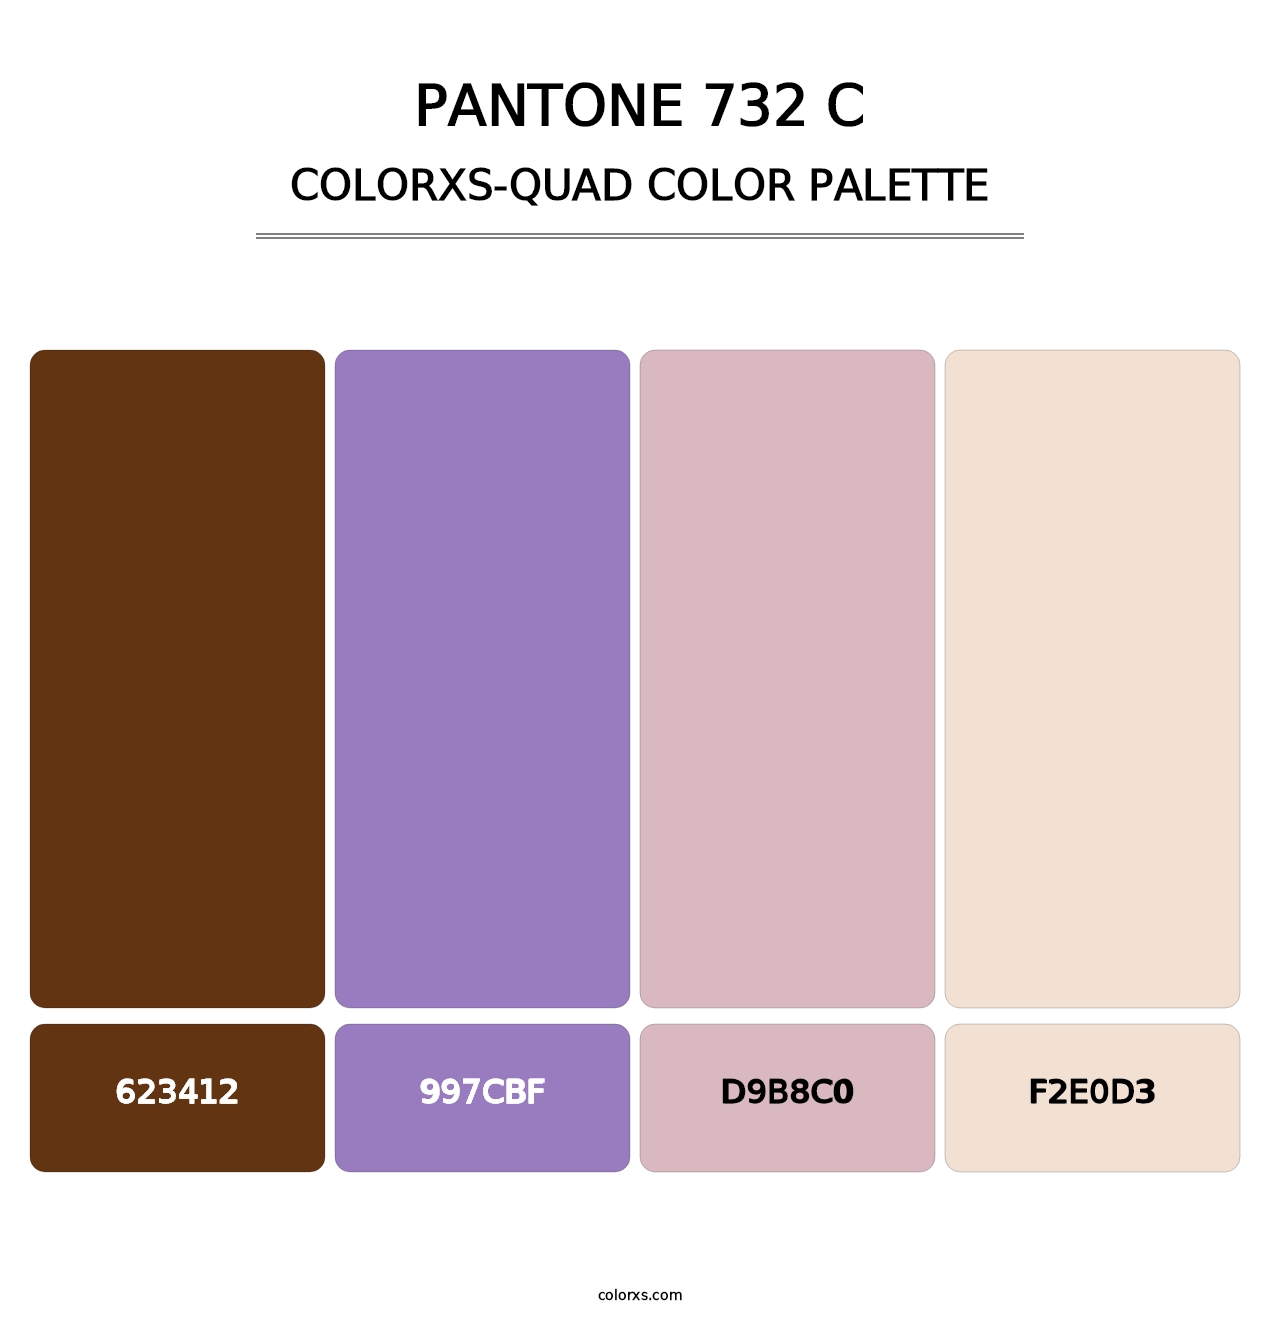 PANTONE 732 C - Colorxs Quad Palette